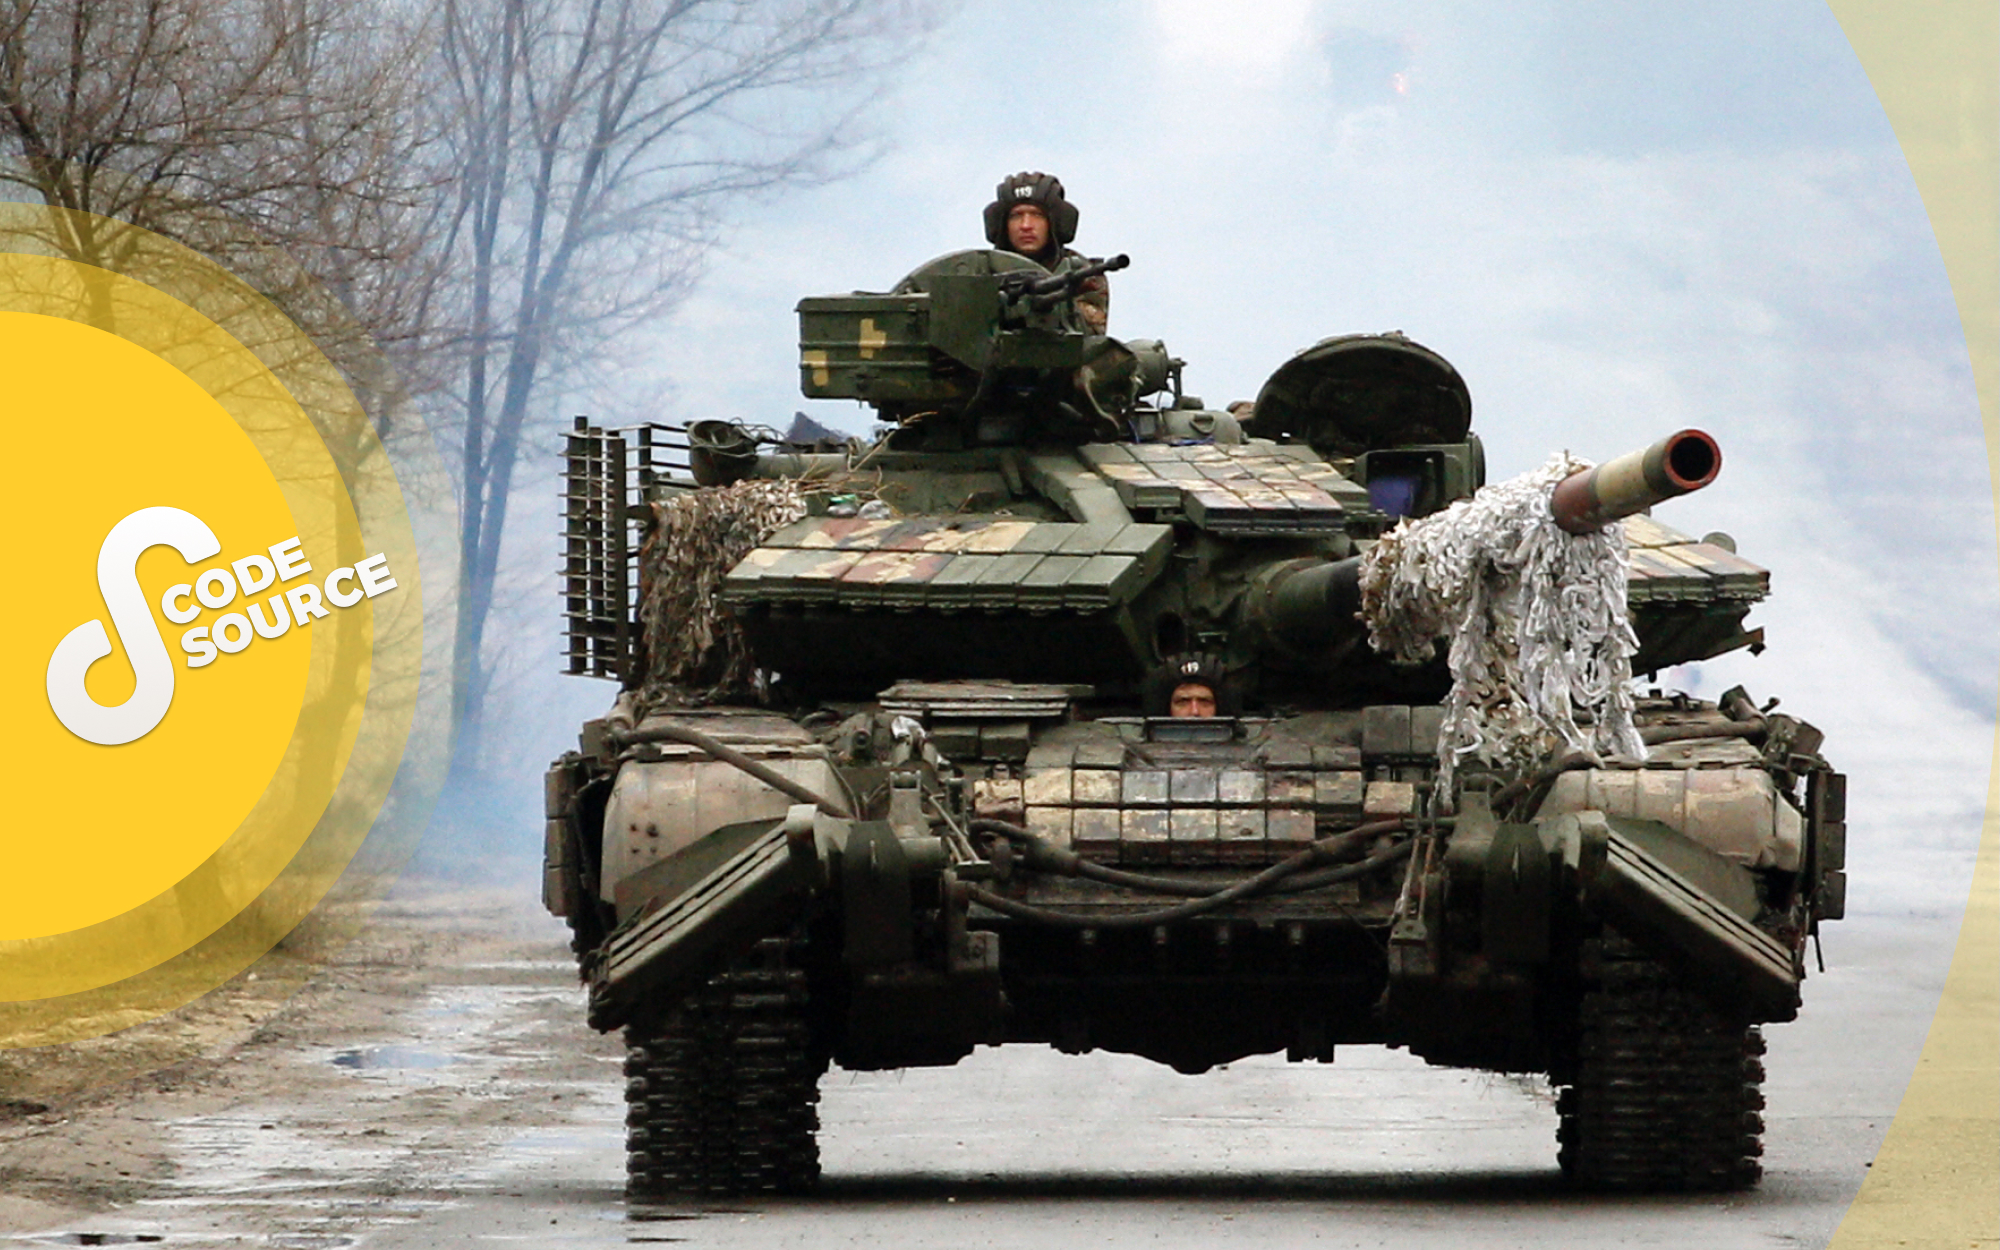 Des militaires ukrainiens montent sur des chars vers la ligne de front, face aux forces russes dans la région de Lugansk en Ukraine le 25 février 2022.